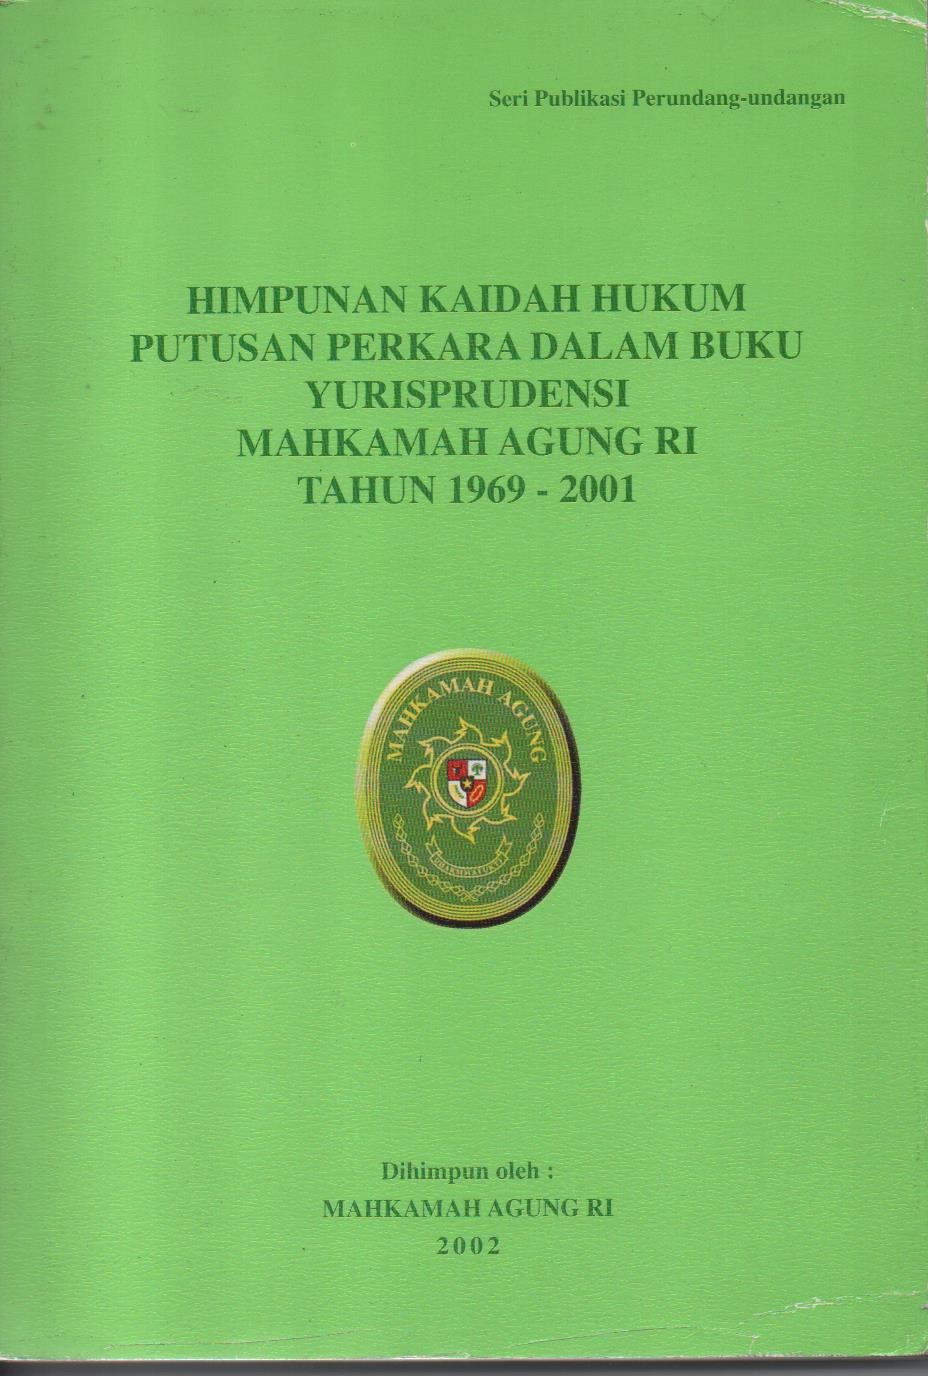 Himpunan Kaidah Hukum Putusan Perkara Dalam Buku Yurisprudensi Mahkamah Agung RI Tahun 1969 - 2001